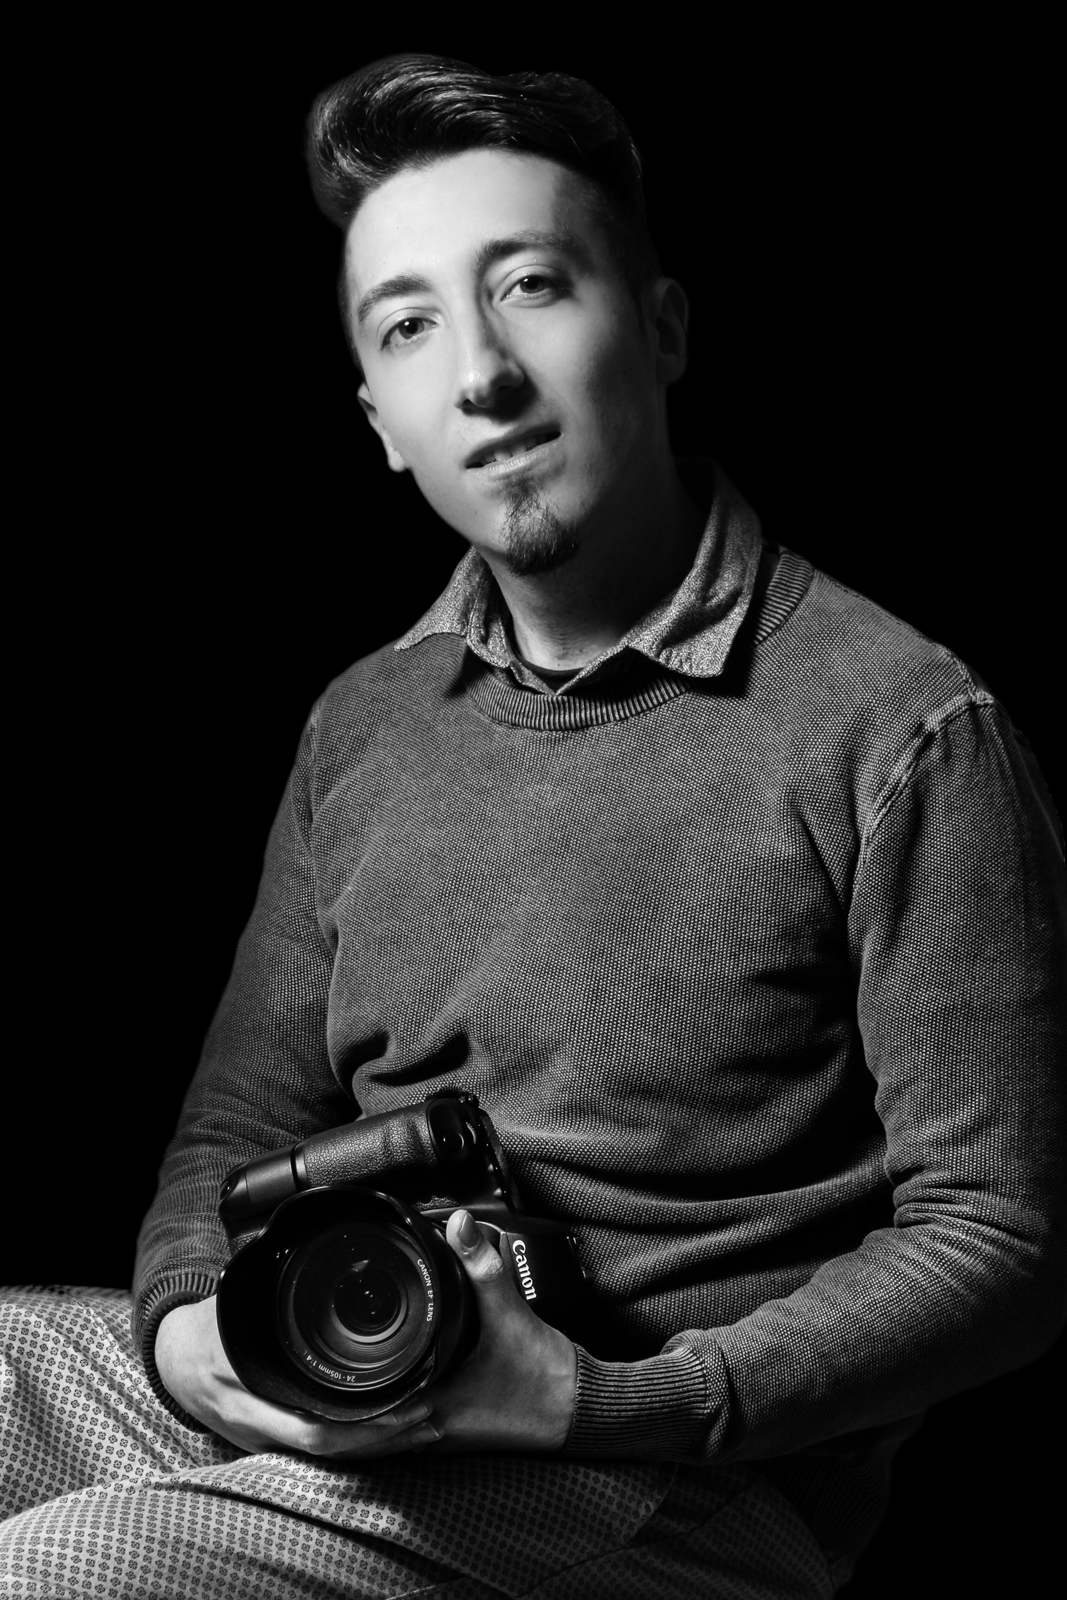 Antonio Tedesco Fotografo Camigliano Caserta